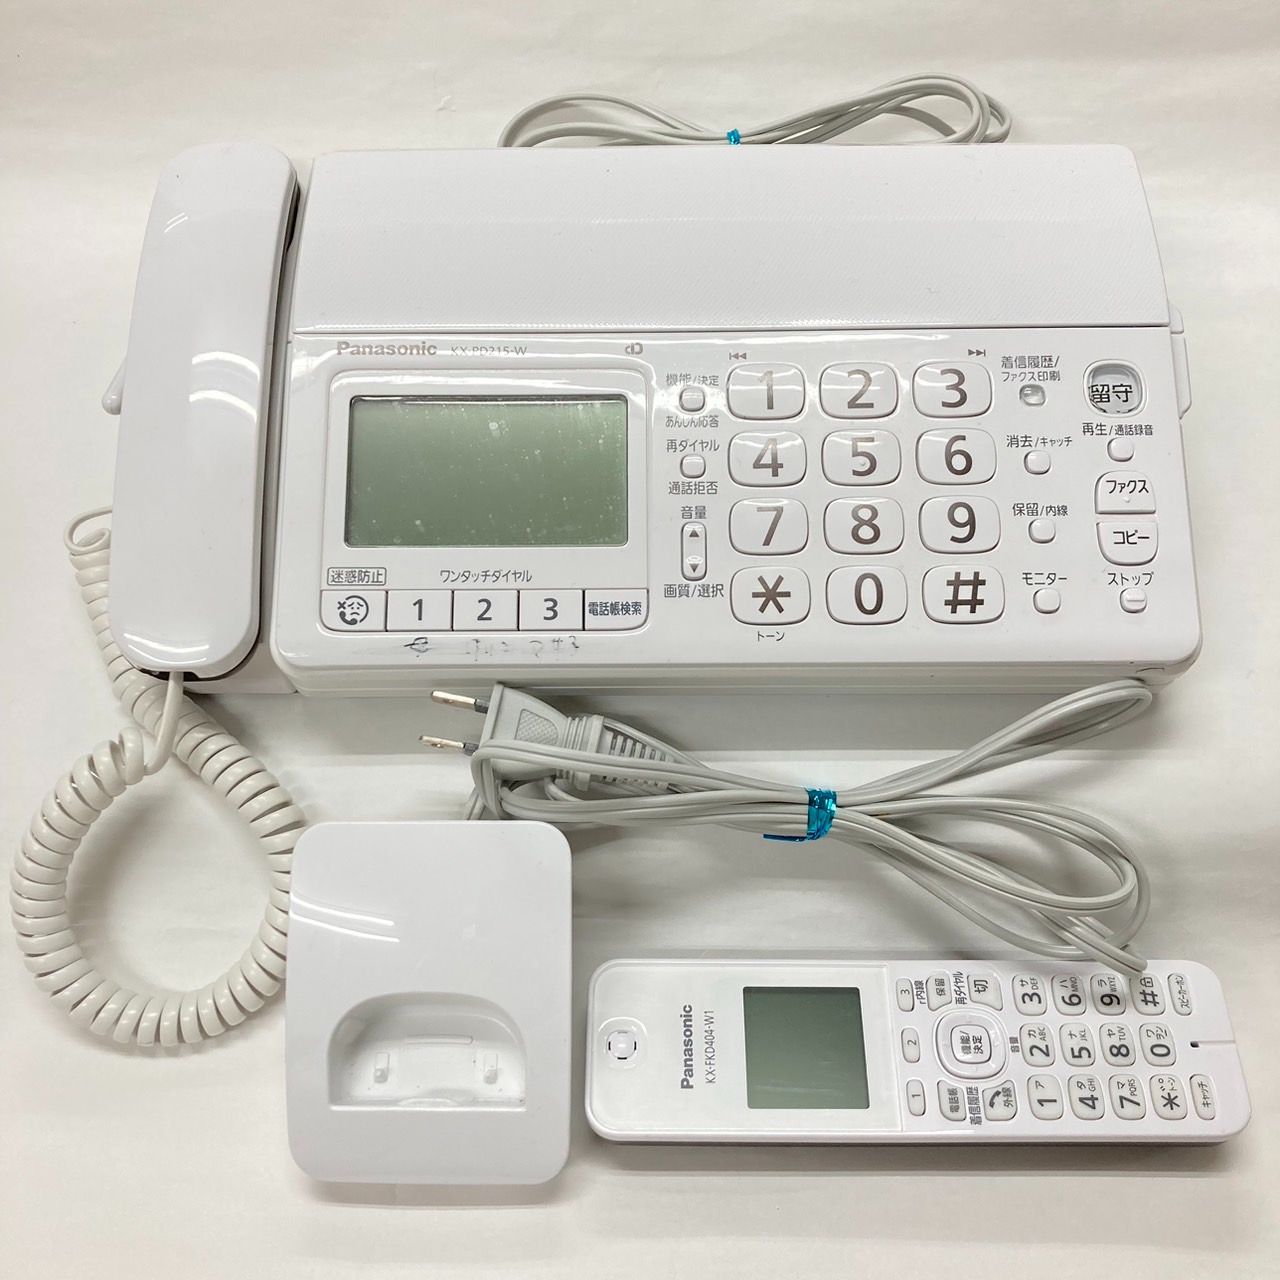 パナソニック 電話機/ファクス(子機1台付き) KX-PD215DL - エセック ...